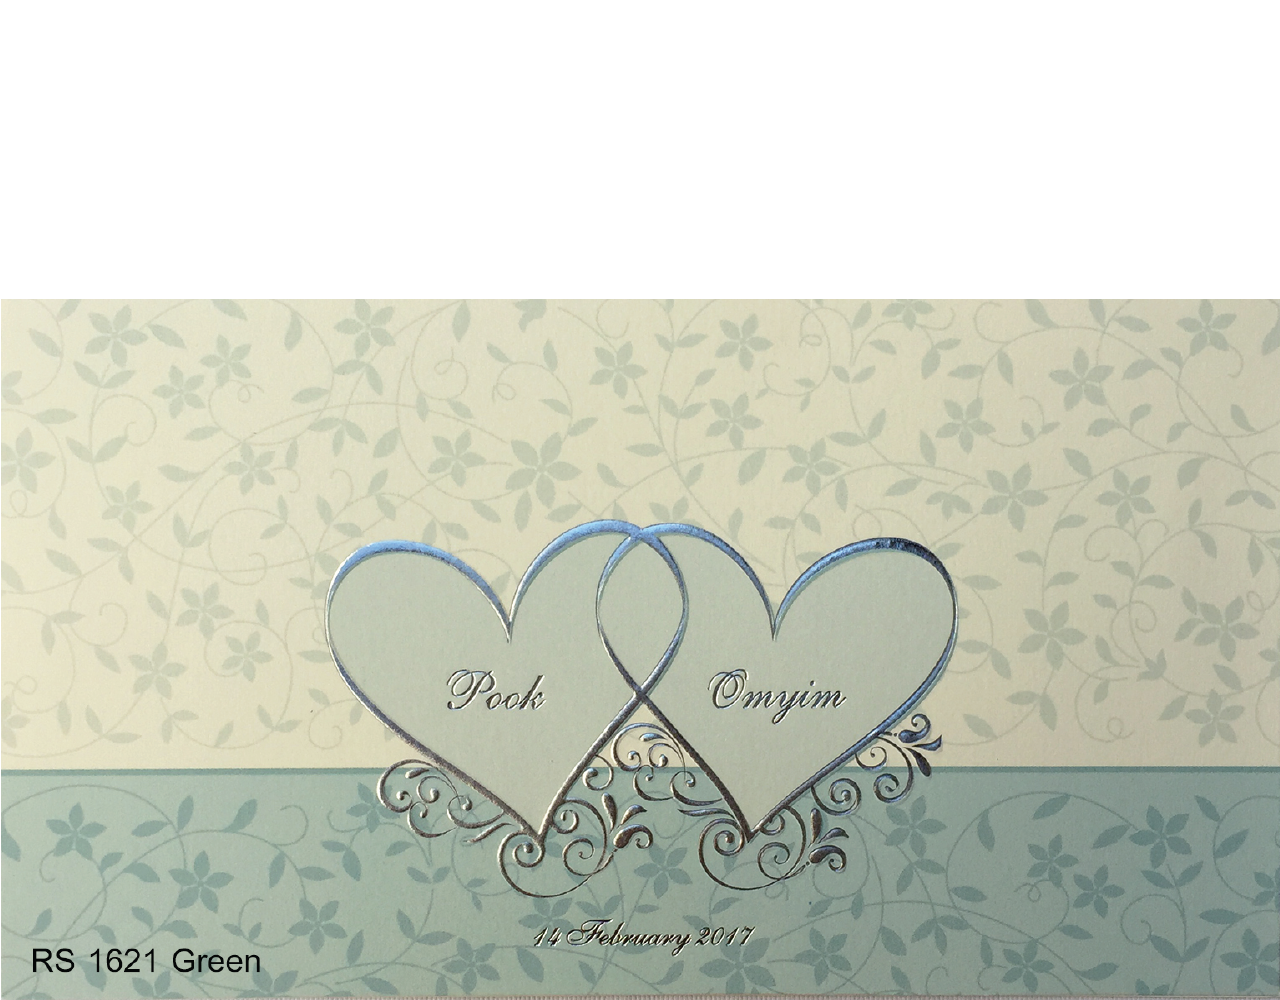 การ์ดแต่งงาน การ์ดเชิญแต่งงาน สีครีมเขียว ลวดลายเรียบง่าย ปั๊มนูนรูปหัวใจ wedding card 4x7.5 inch RS.1621